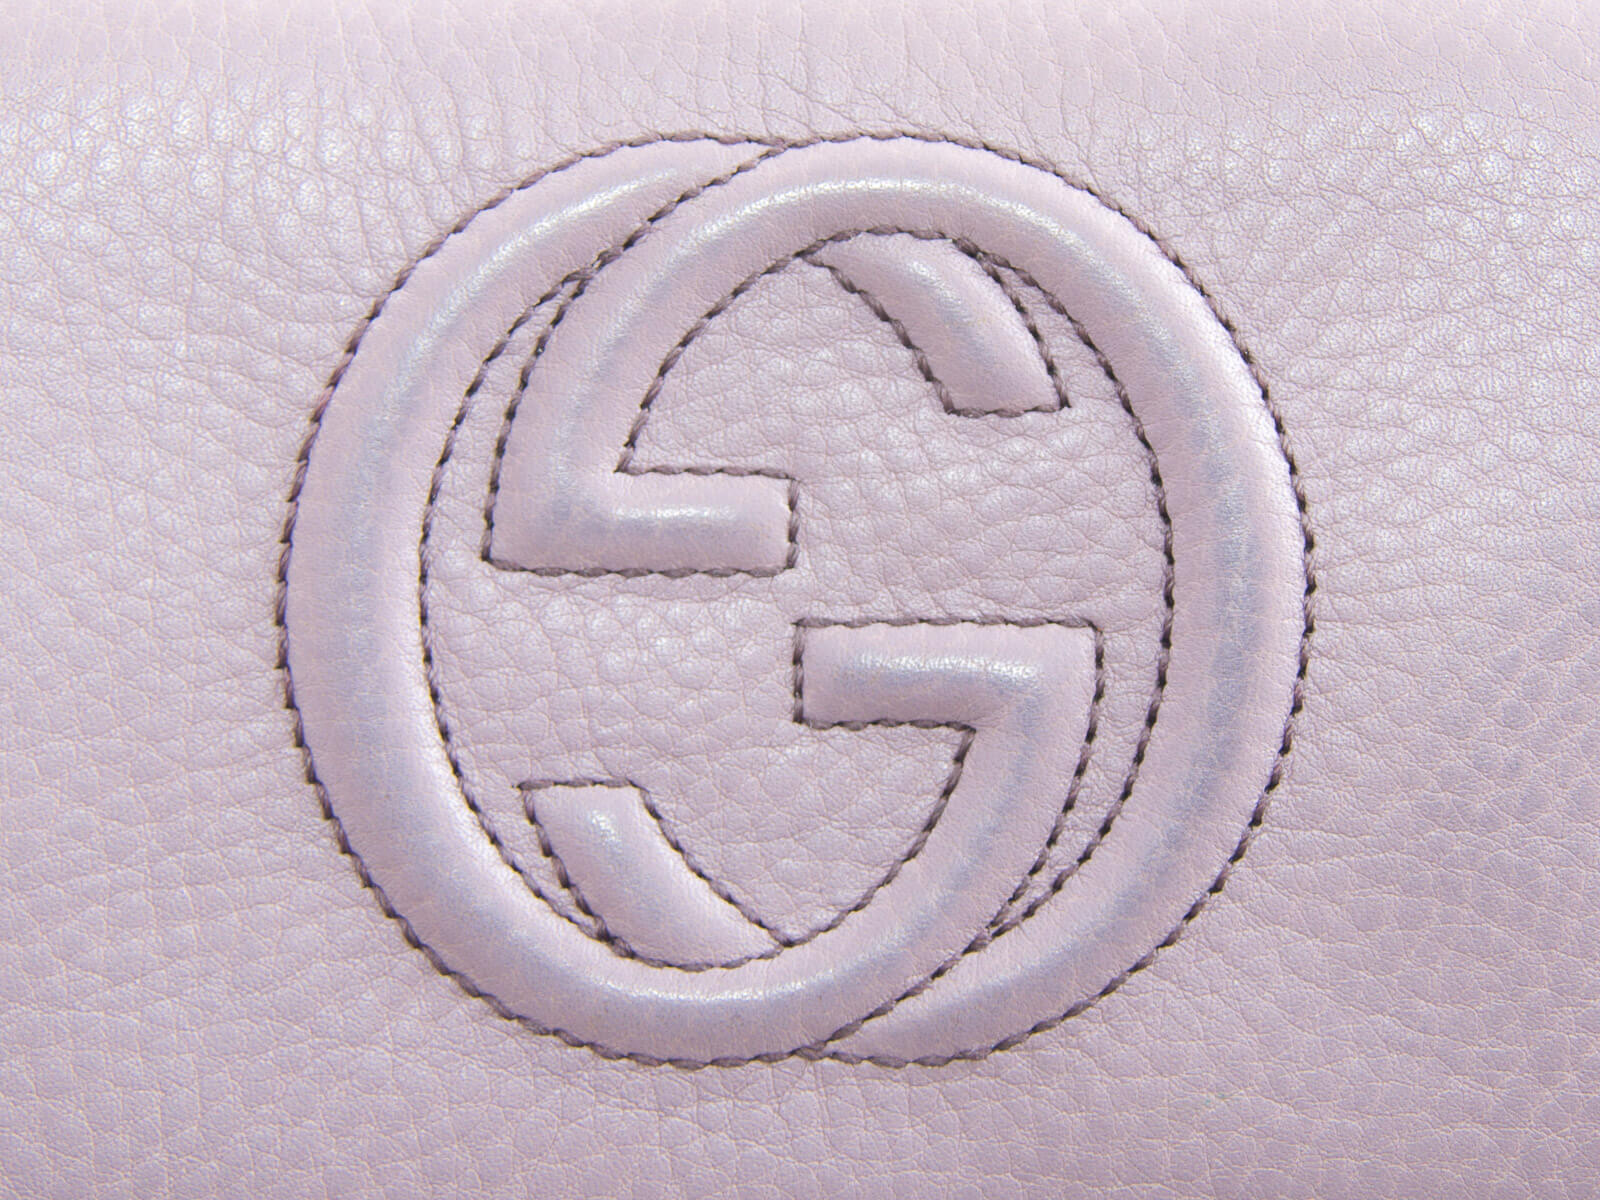 gucci gg logo